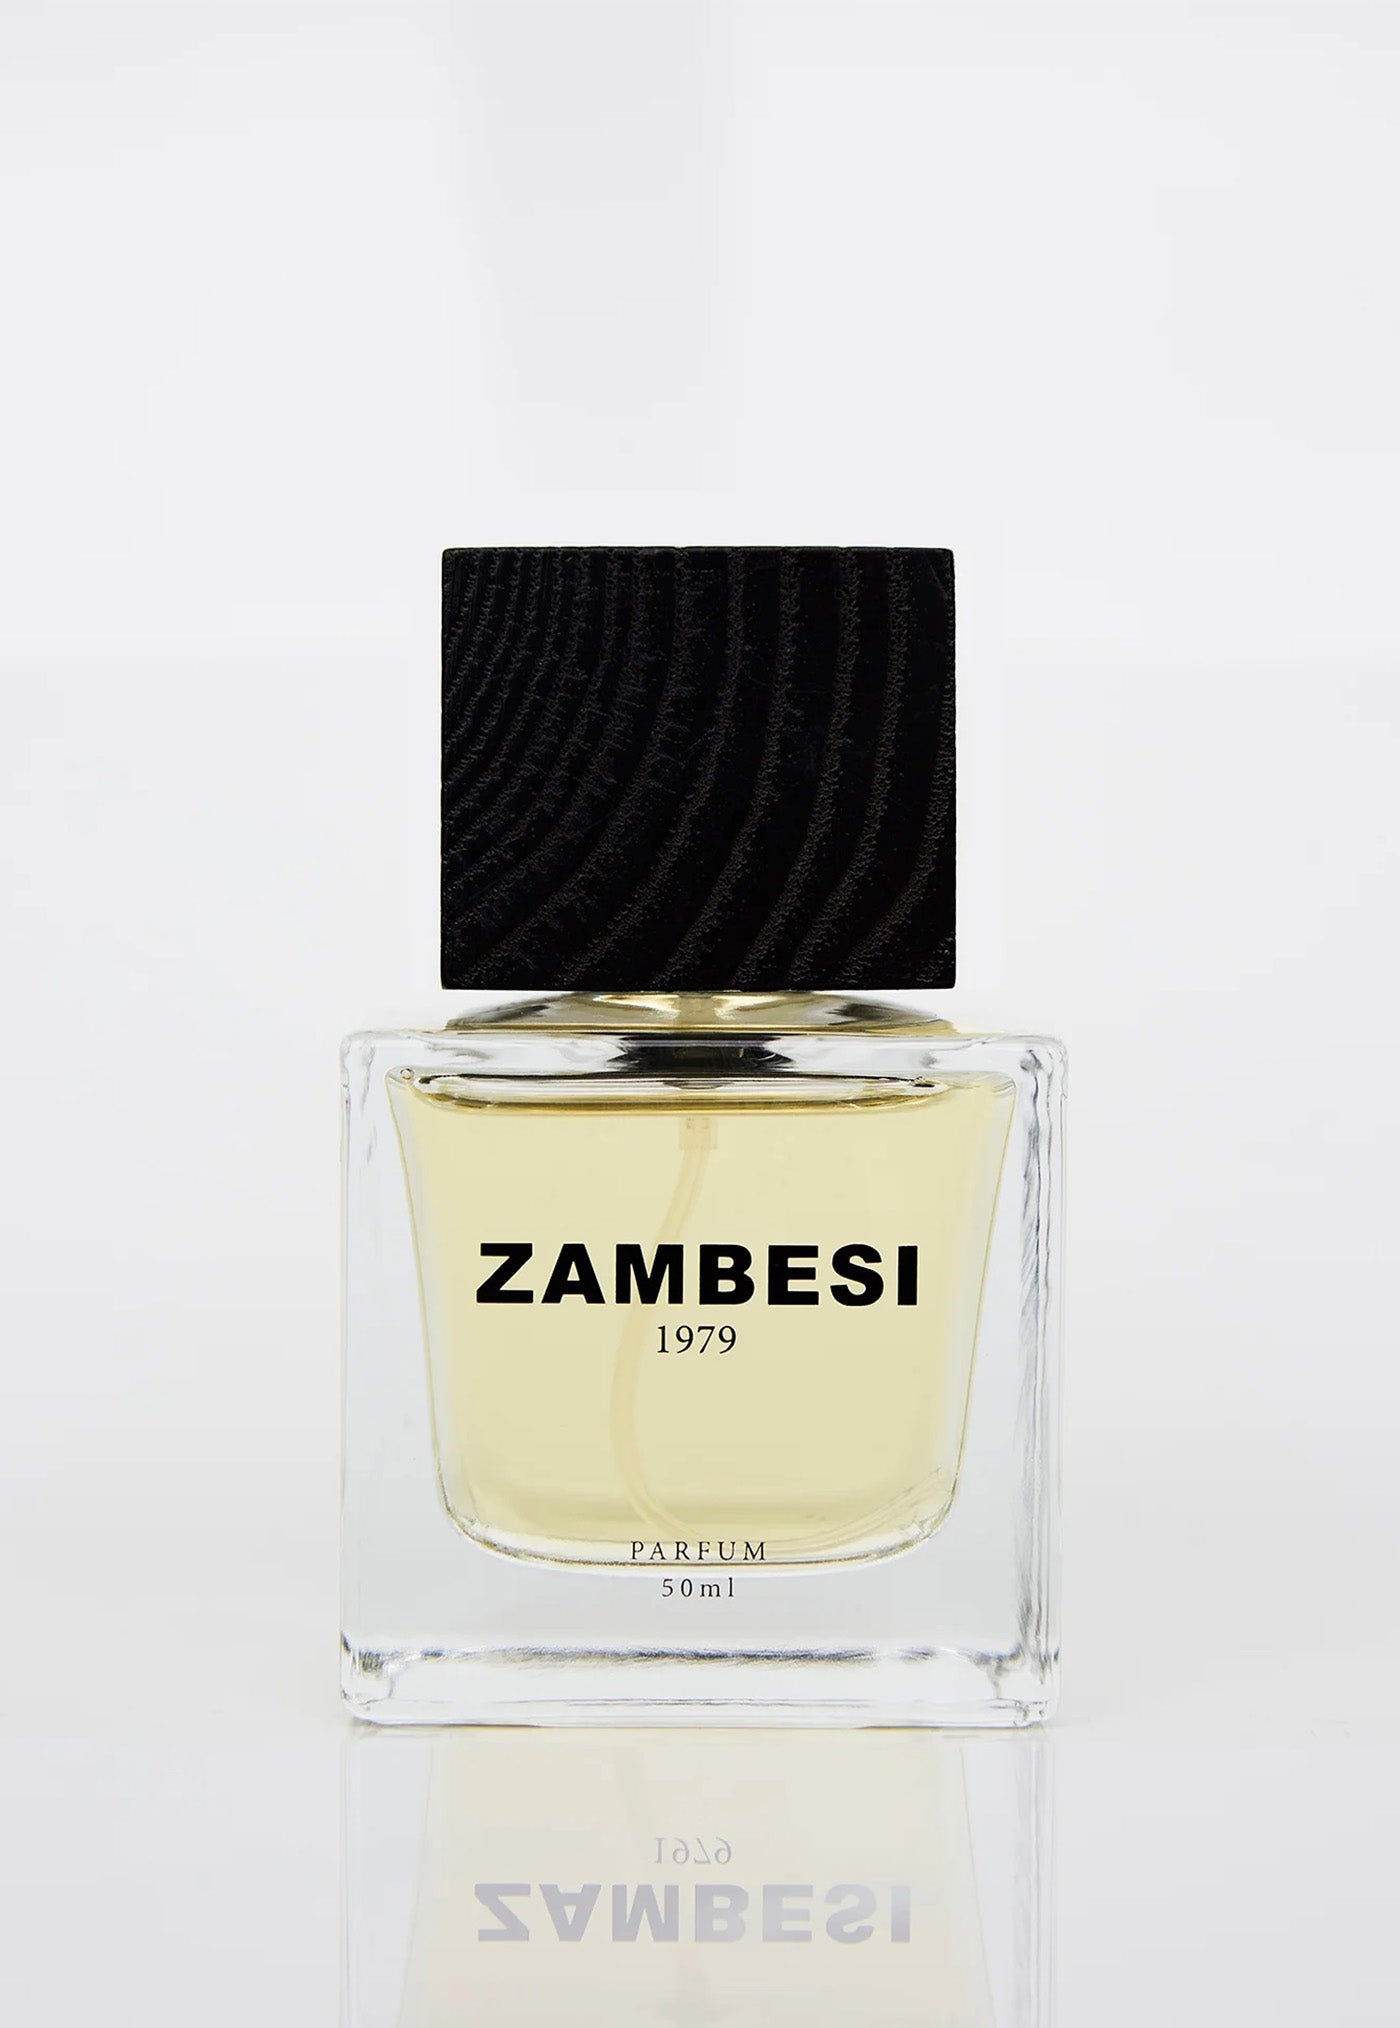 Zambesi Parfum - 1979 sold by Angel Divine